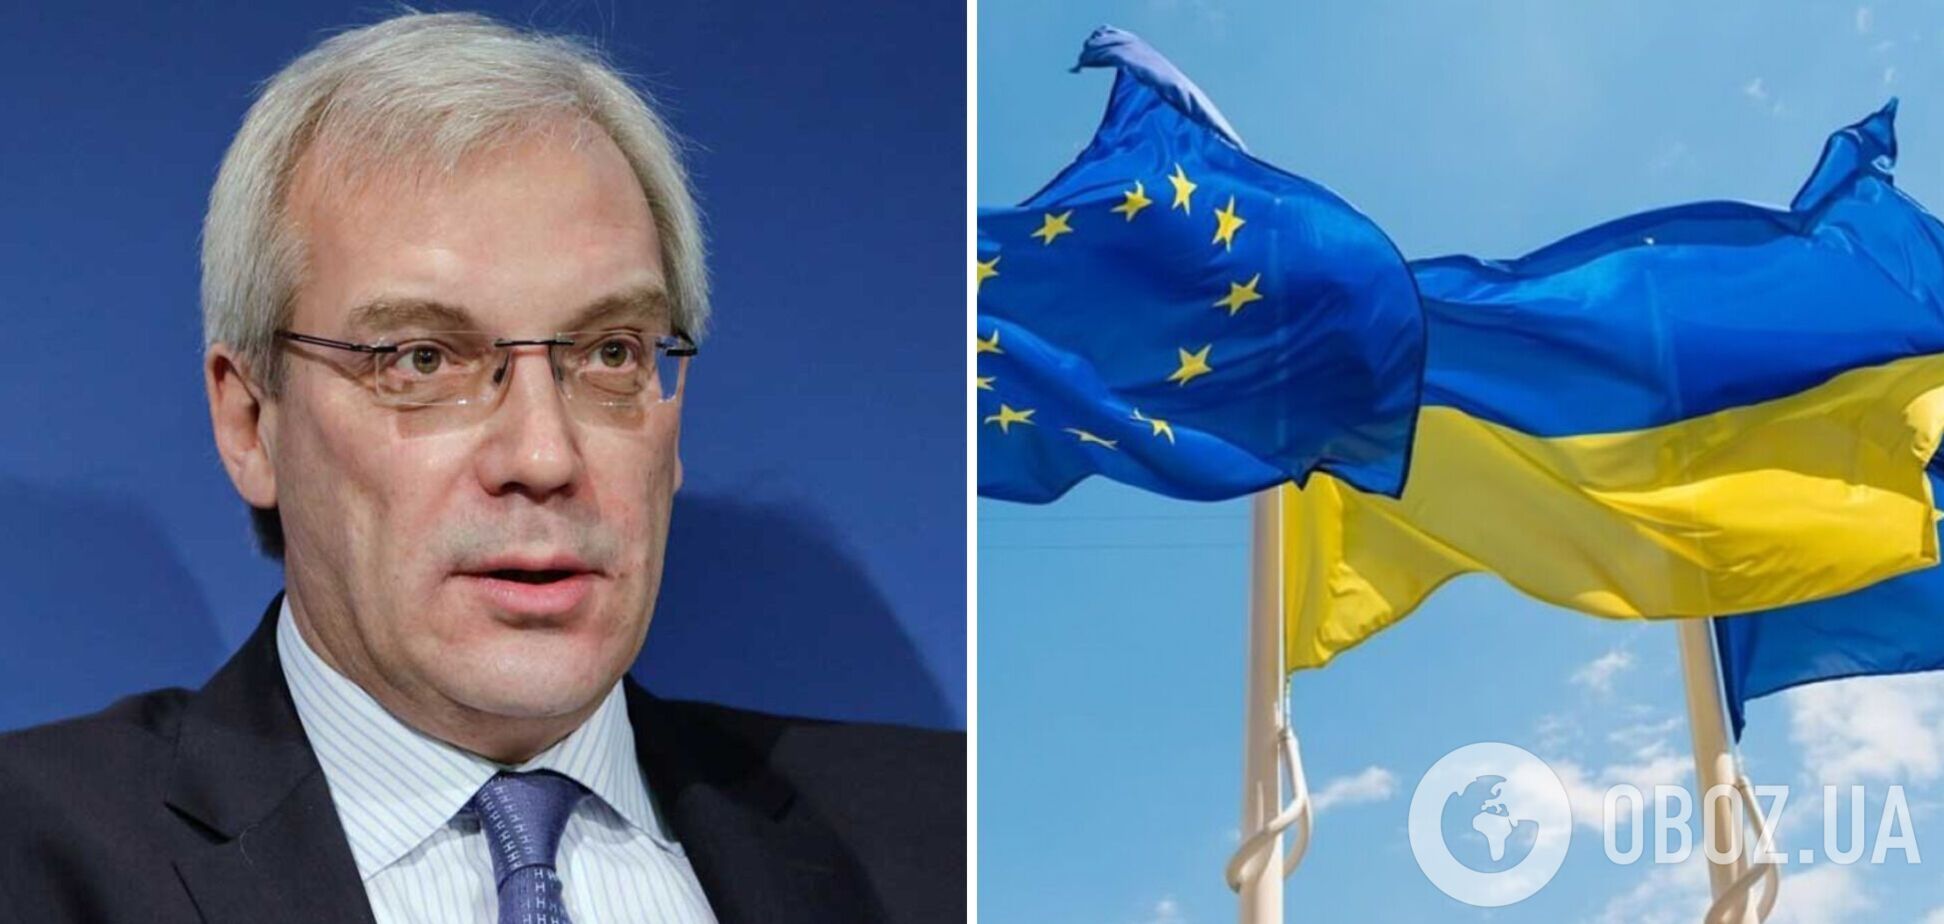 Грушко угрожает ЕС из-за вступления Украины